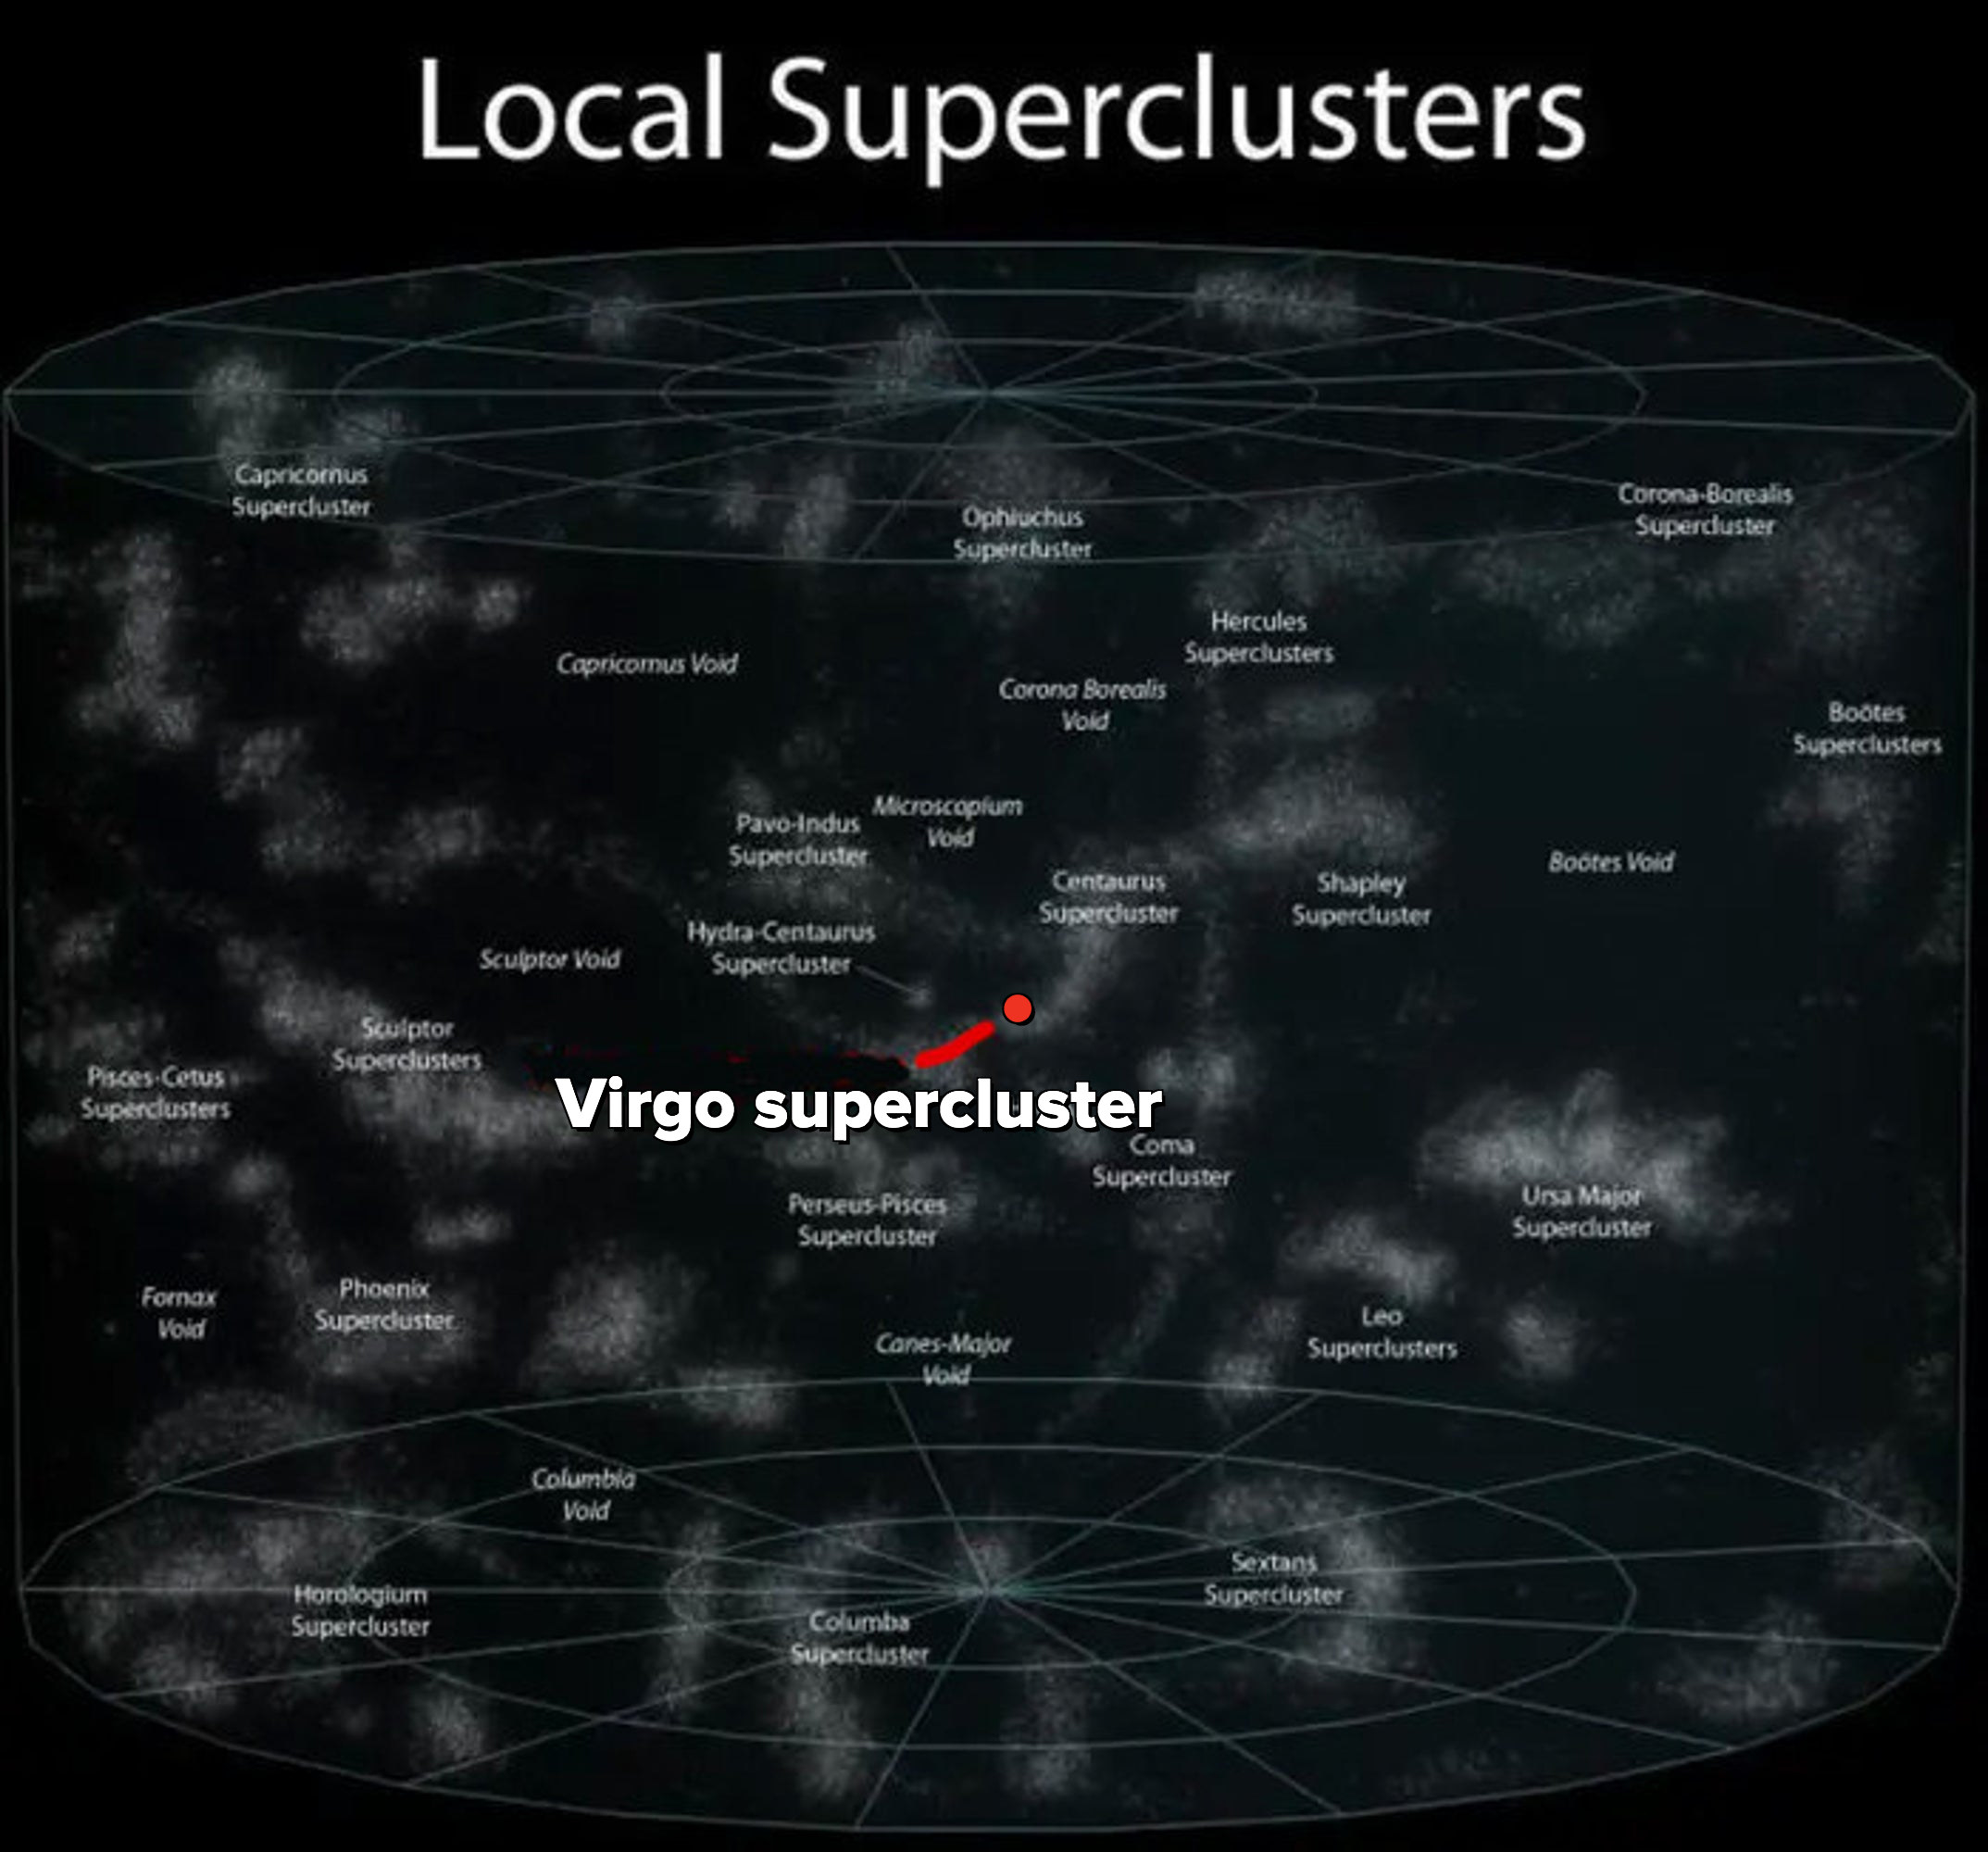 Virgo supercluster